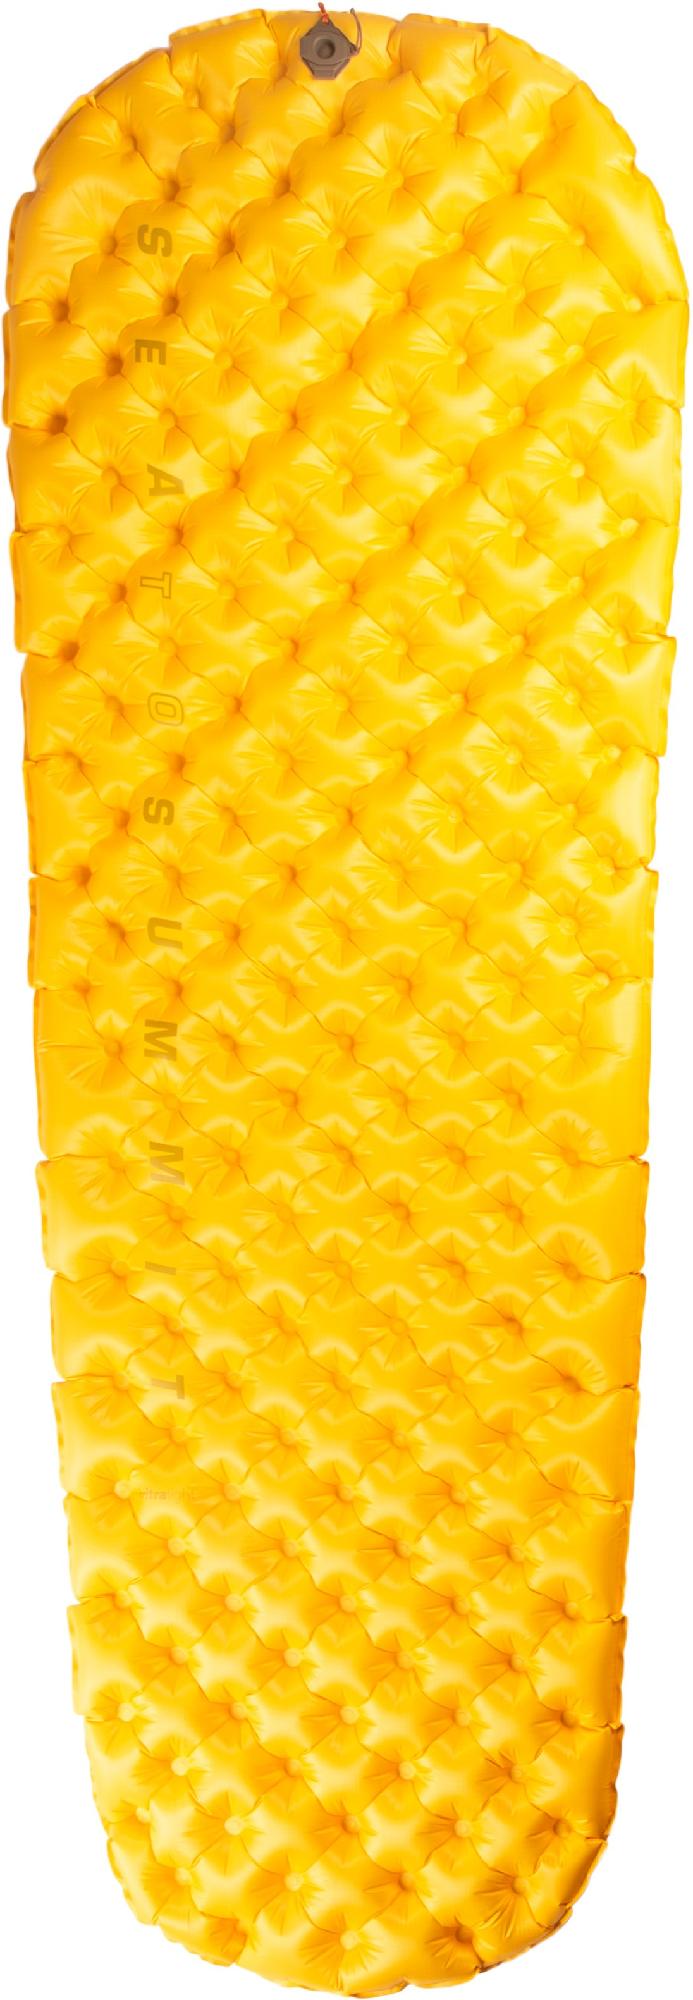 Сверхлегкий воздушный спальный коврик Sea to Summit, желтый коврик для карт yu gi oh red dragon archfiend коврик для игр ygo mat mtg kmc tcg yugioh mat 228